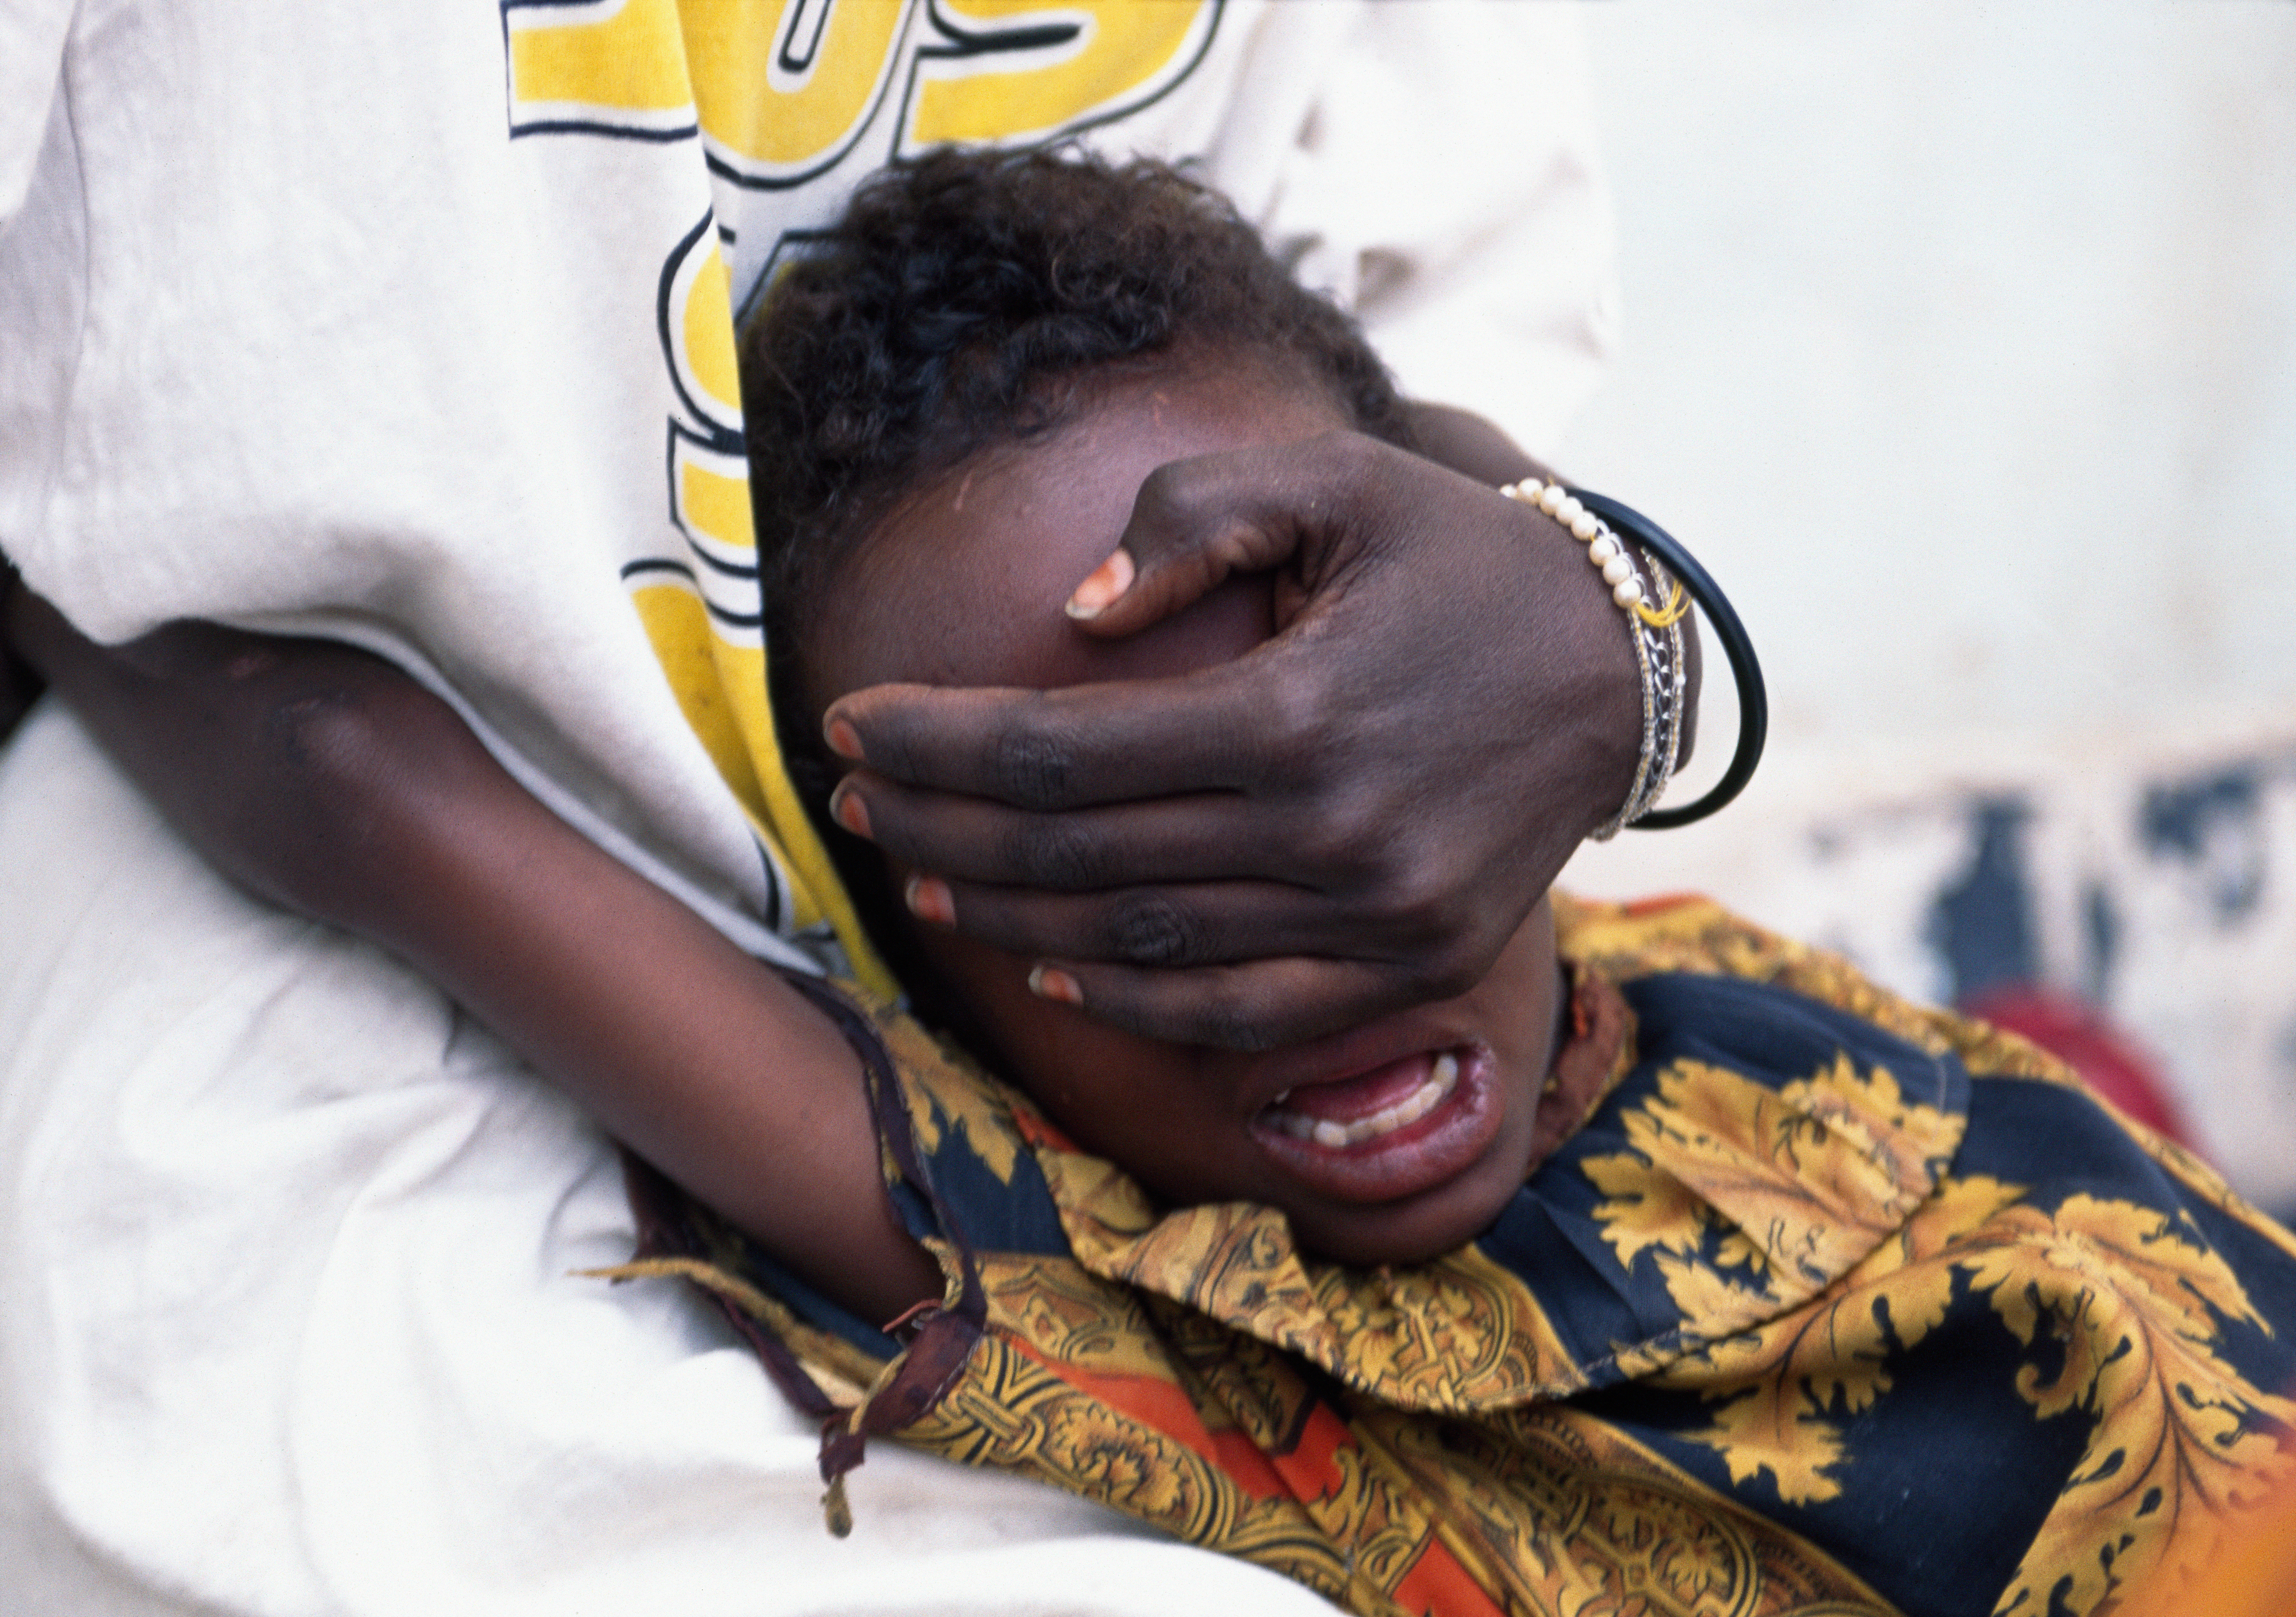 Die meisten betroffenen Mädchen kommen aus afrikanischen Staaten. (Symbolbild)